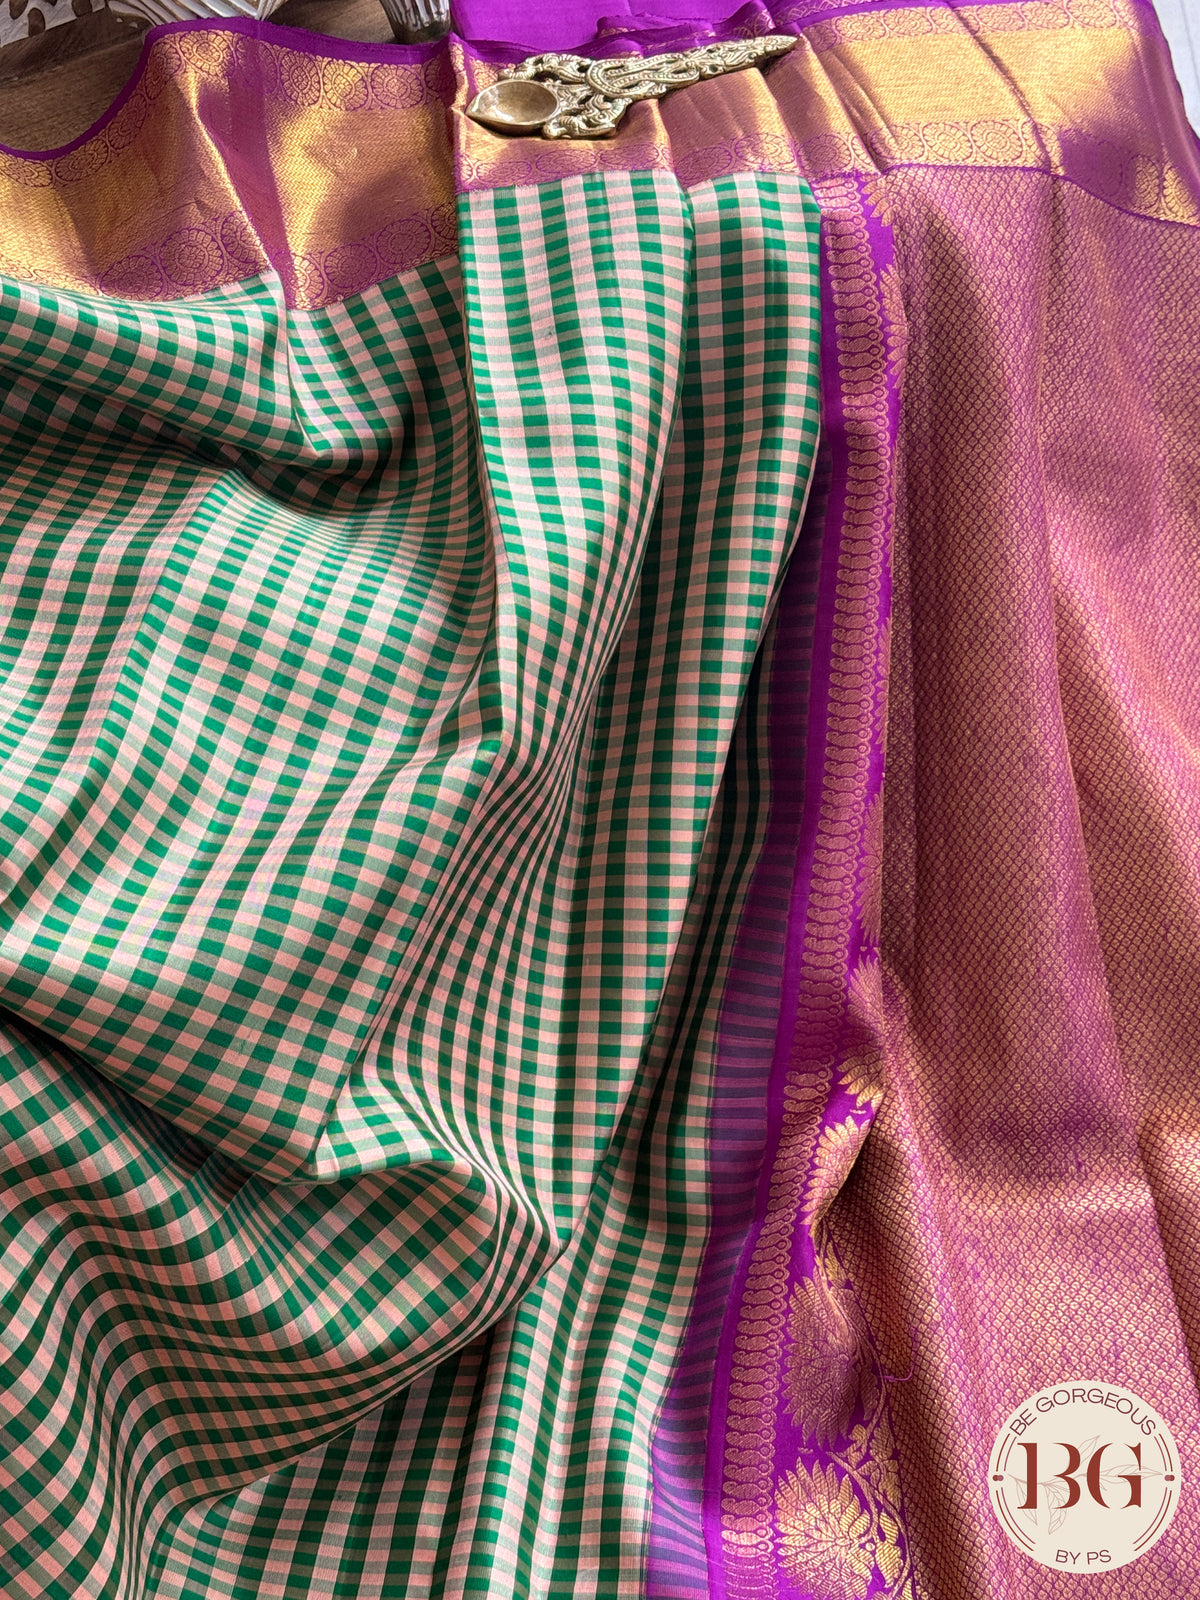 Kanjeevaram pure silk handloom saree checker patter and pure zari - Green